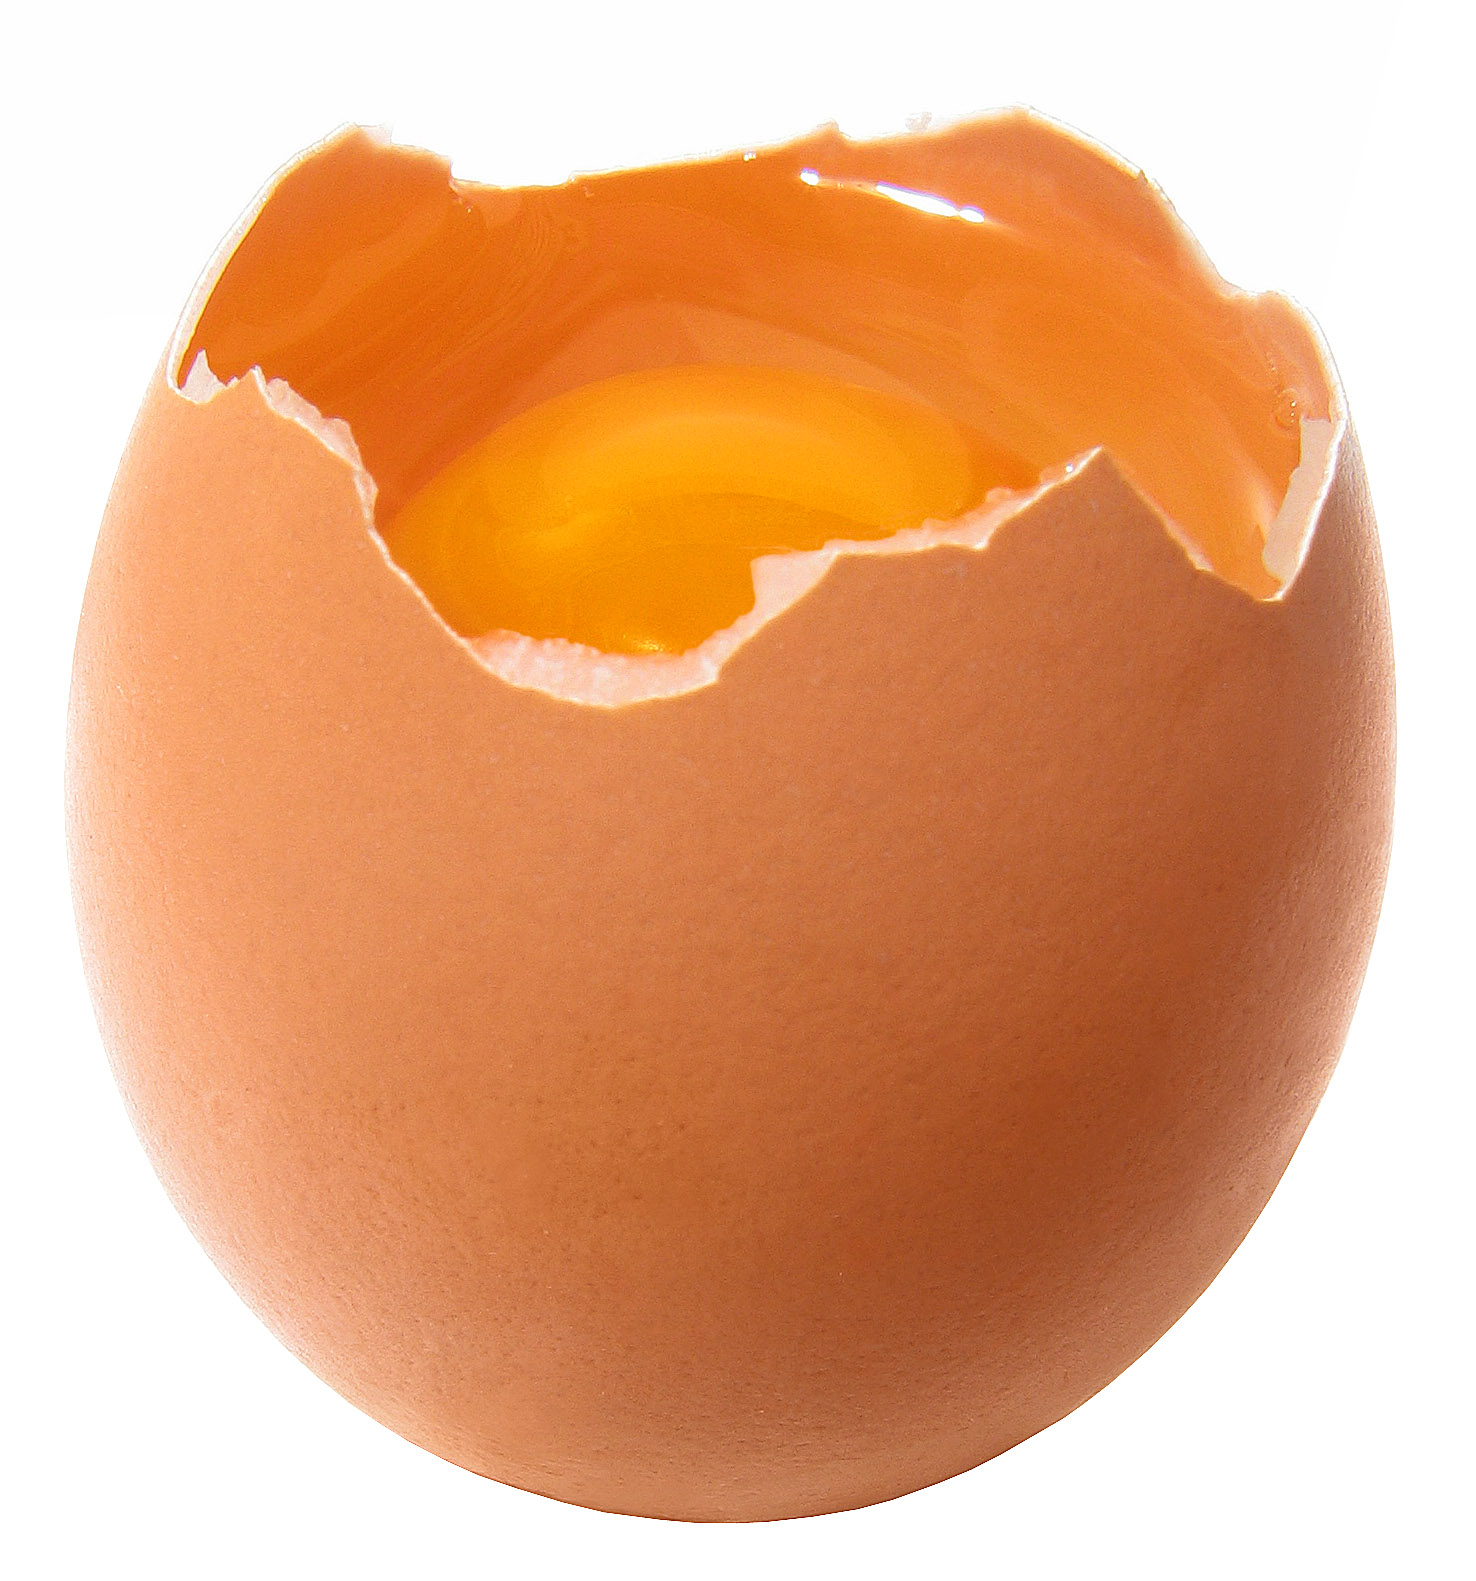 Broken Egg Pictures - Freaking News